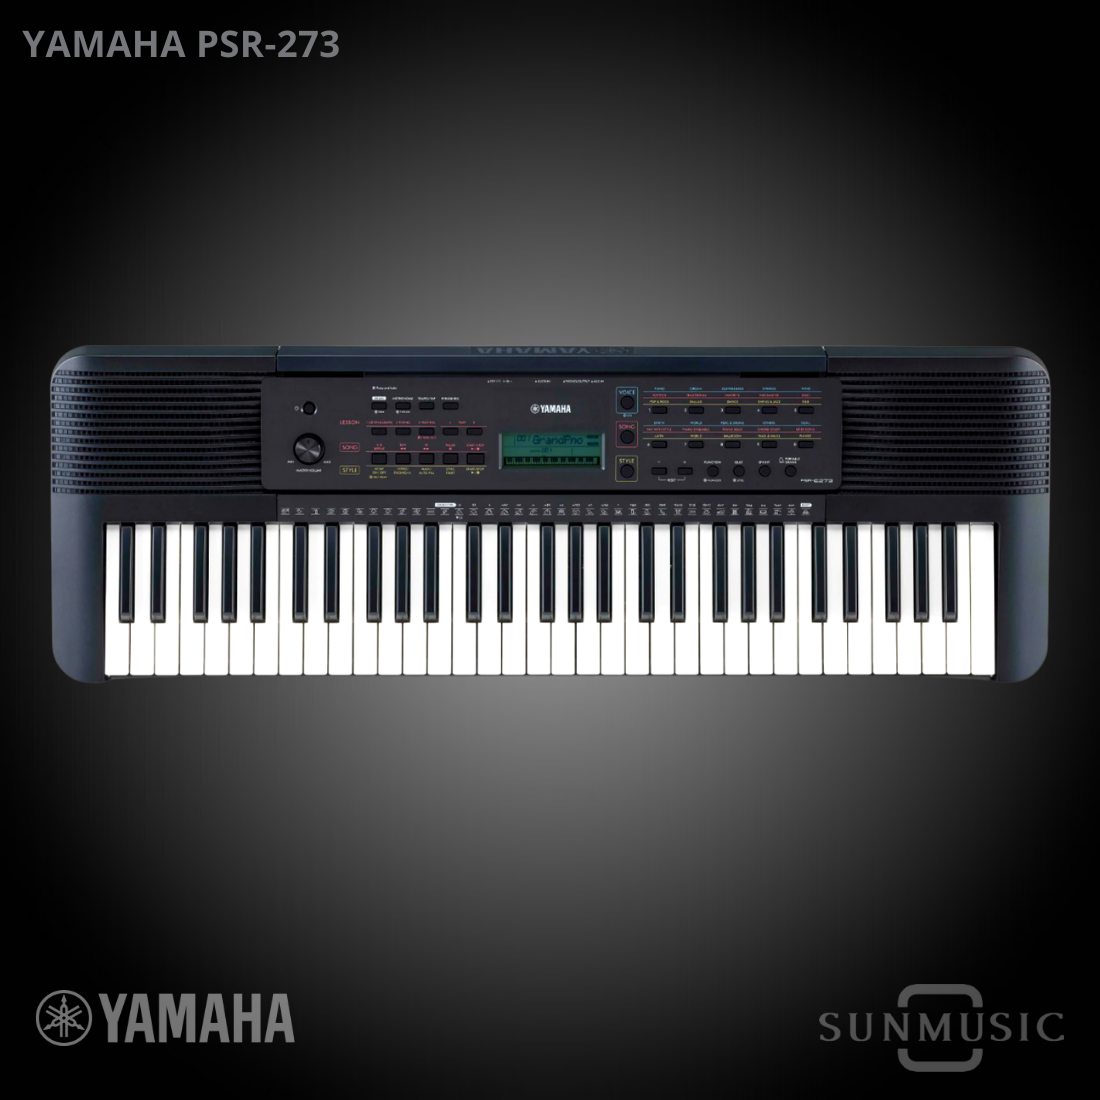 Teclado Yamaha PSRE273 Portátil E-273 61 Teclas - Cheiro de Música